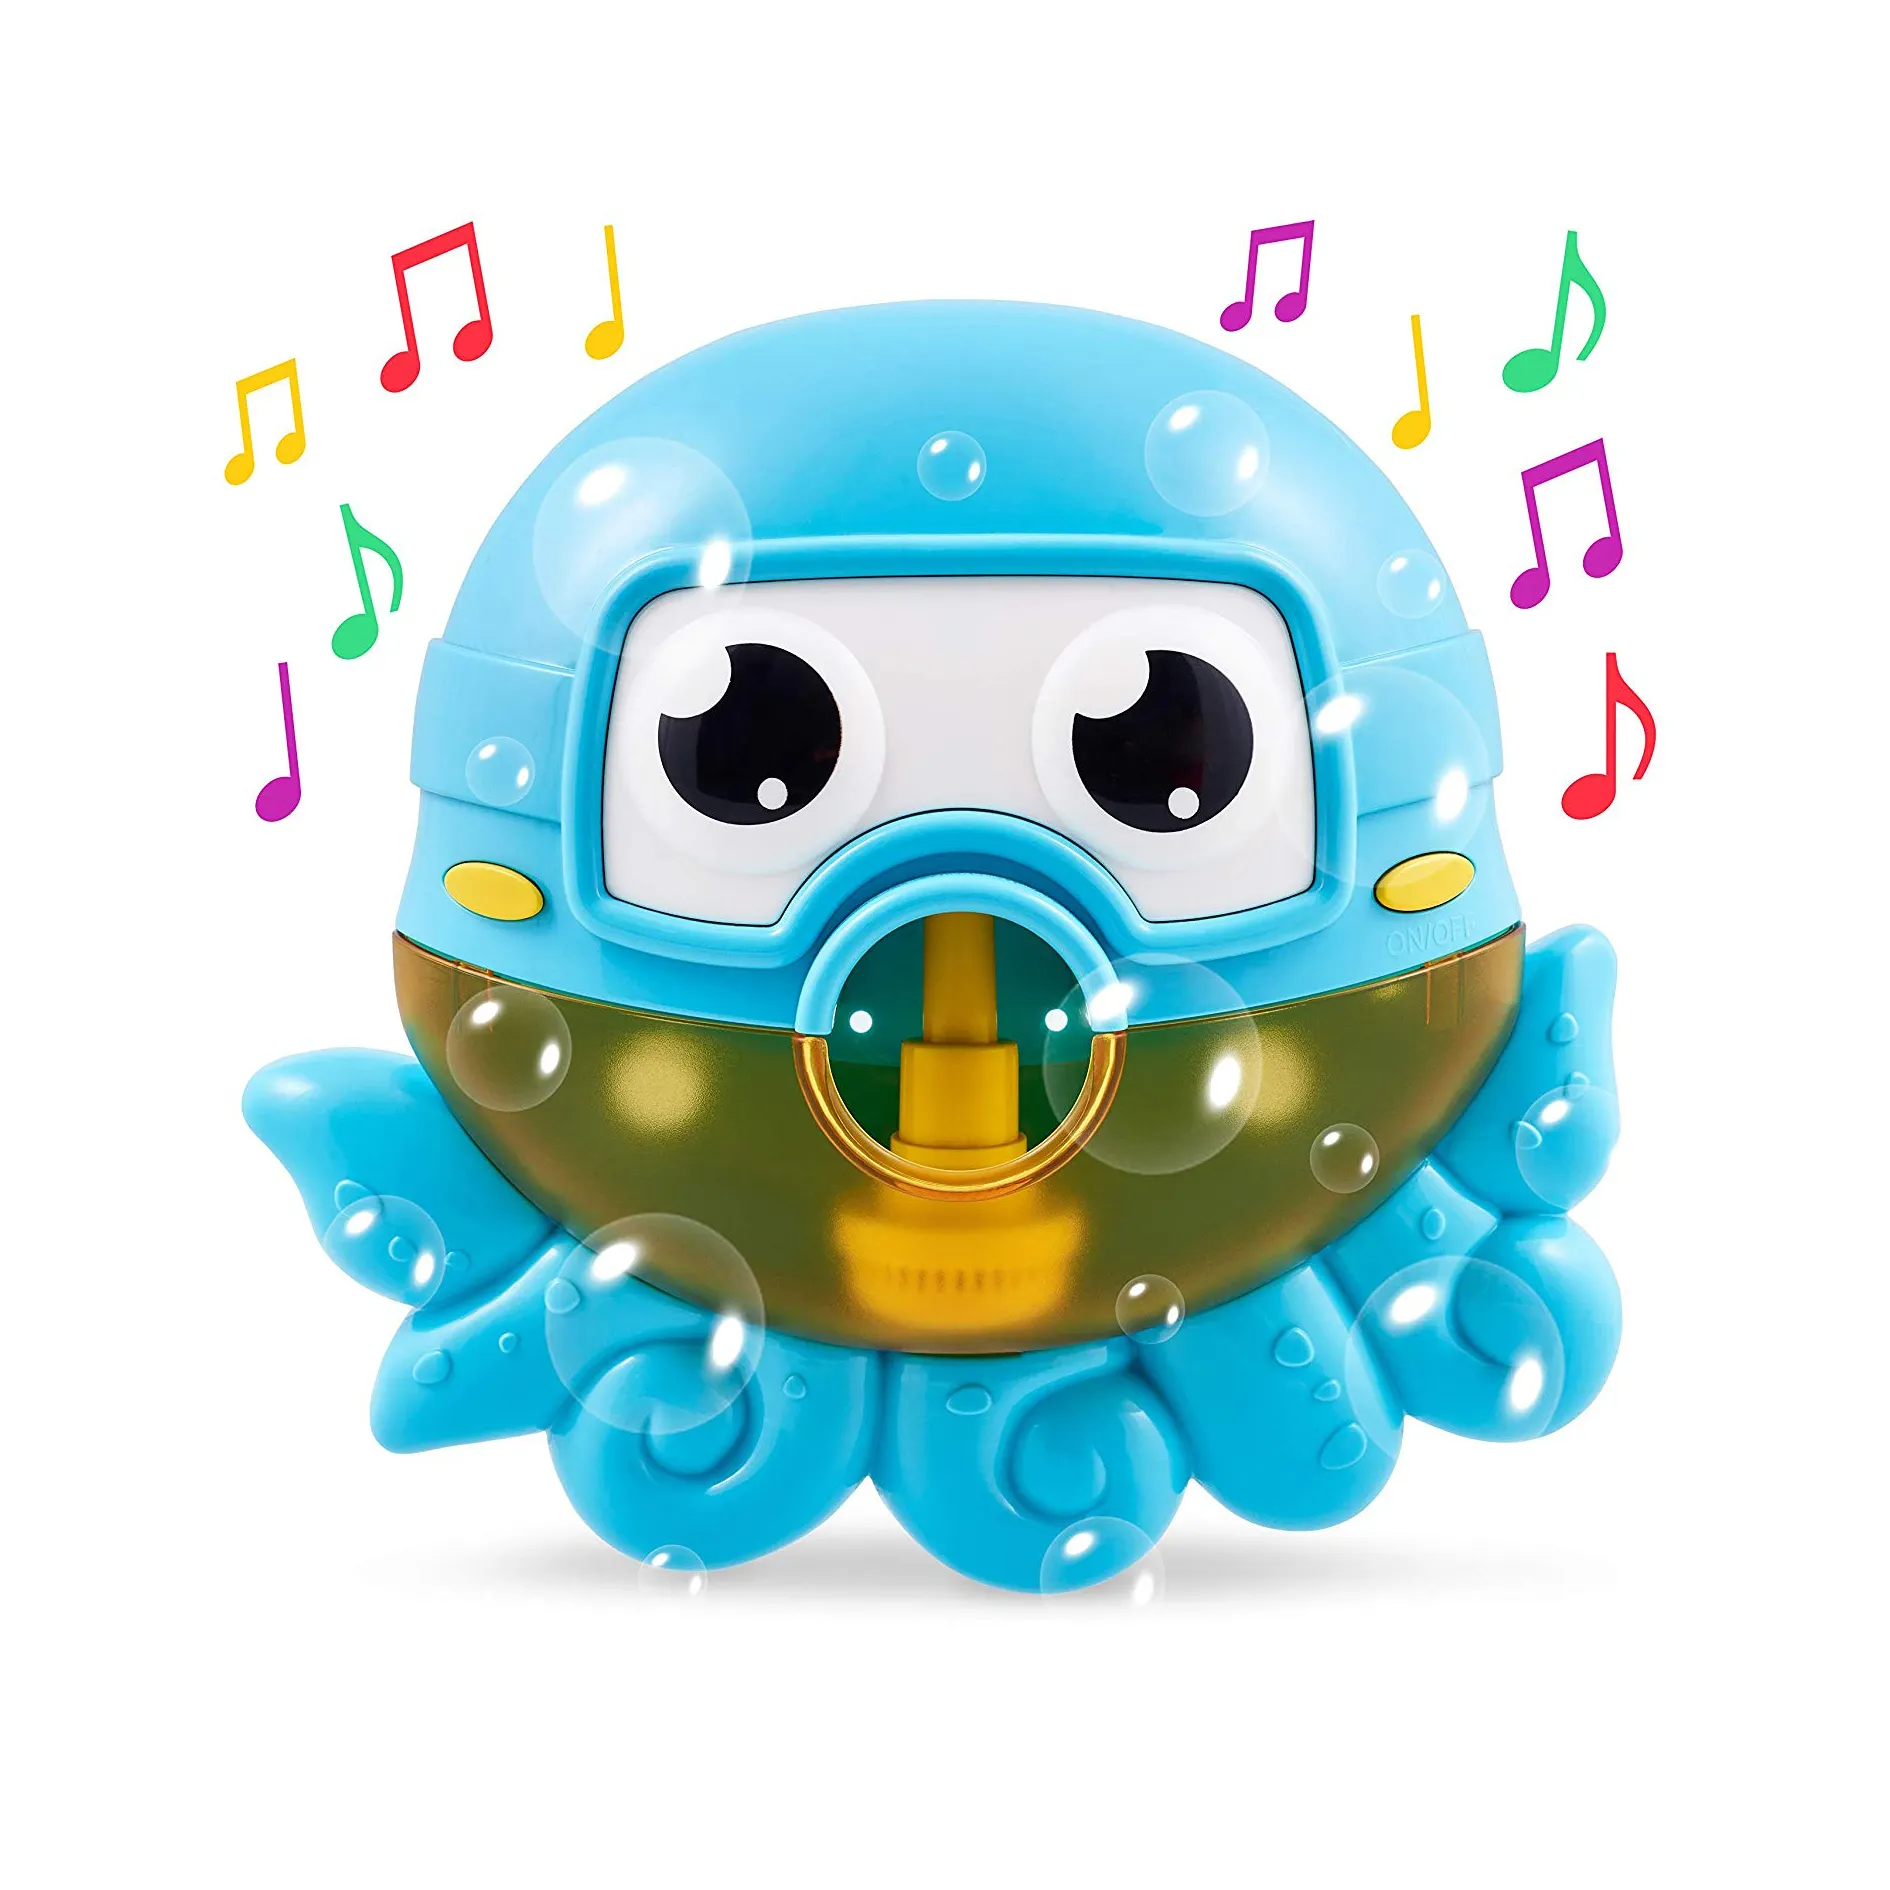 Juguete de baño de burbujas de pulpo para la bañera Blows burbujas y reproduce 24 canciones para niños, juguete de baño para bebés y niños pequeños